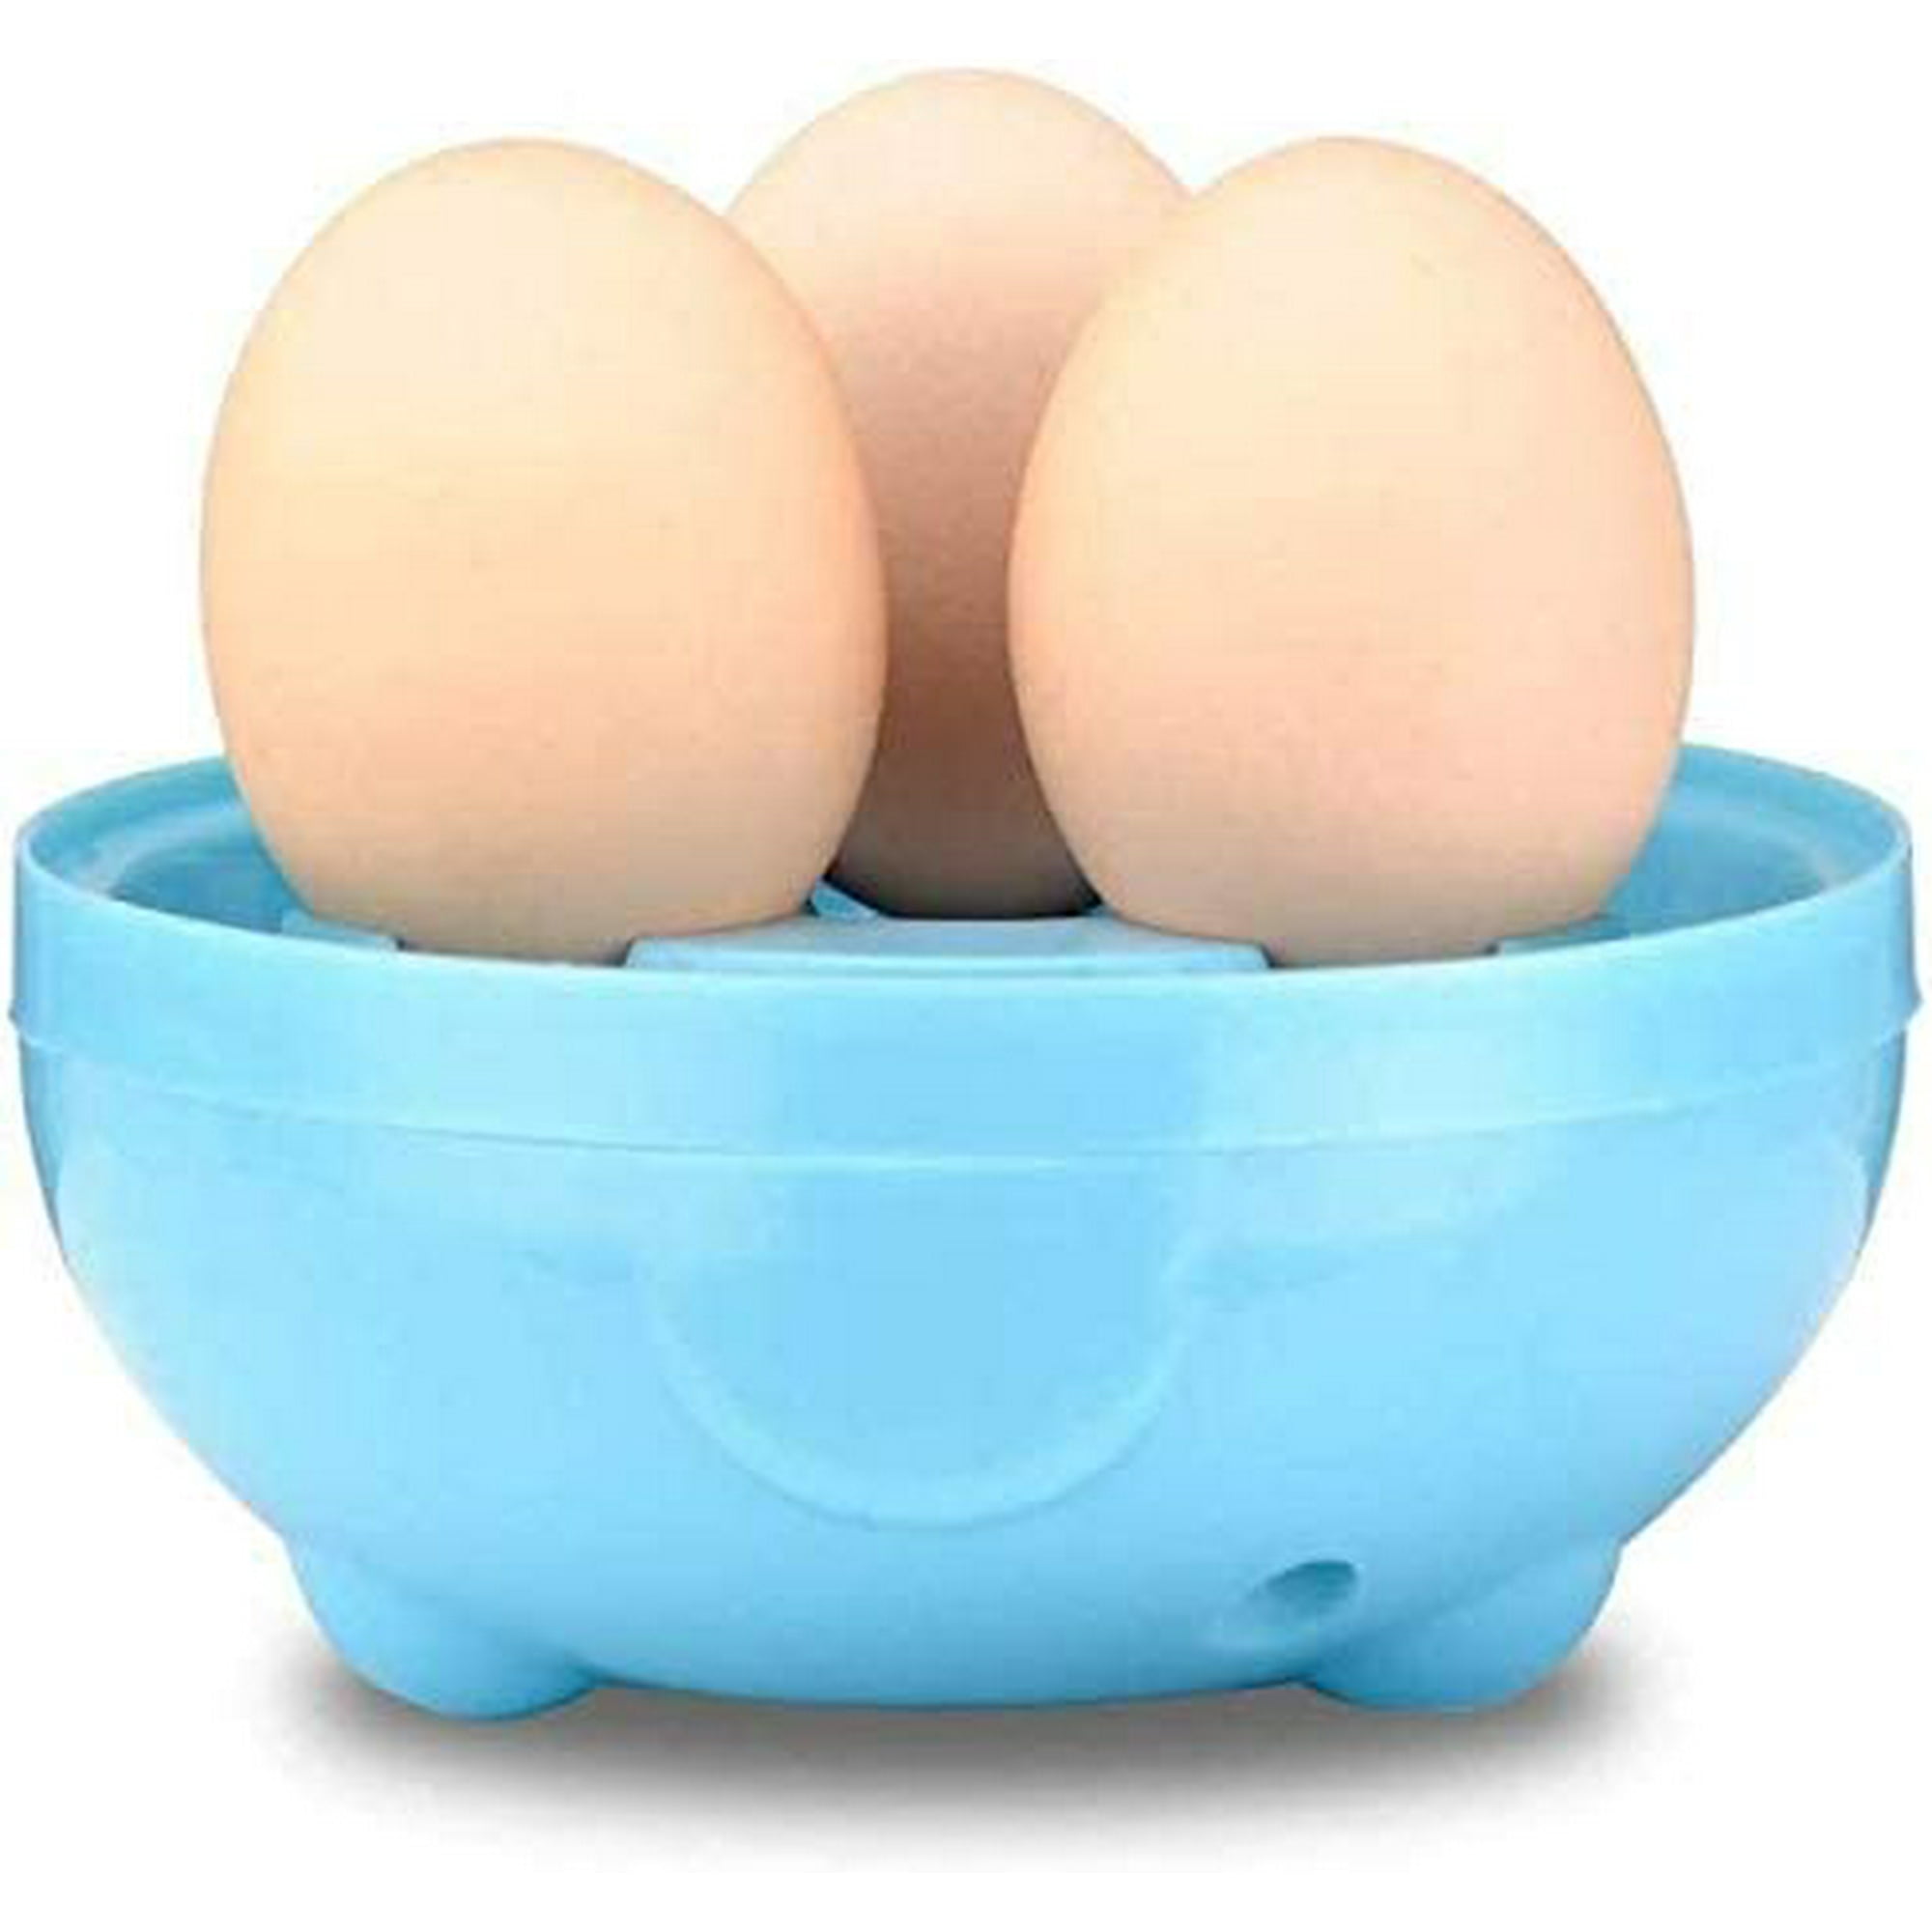  Cocedor de huevos de microondas, Caldera de huevos de microondas,  Cocedor de huevos para microondas, Cocedor de huevos para microondas, Horno  de microondas Doble huevo escalfador, Horno de microondas Vaporizador de